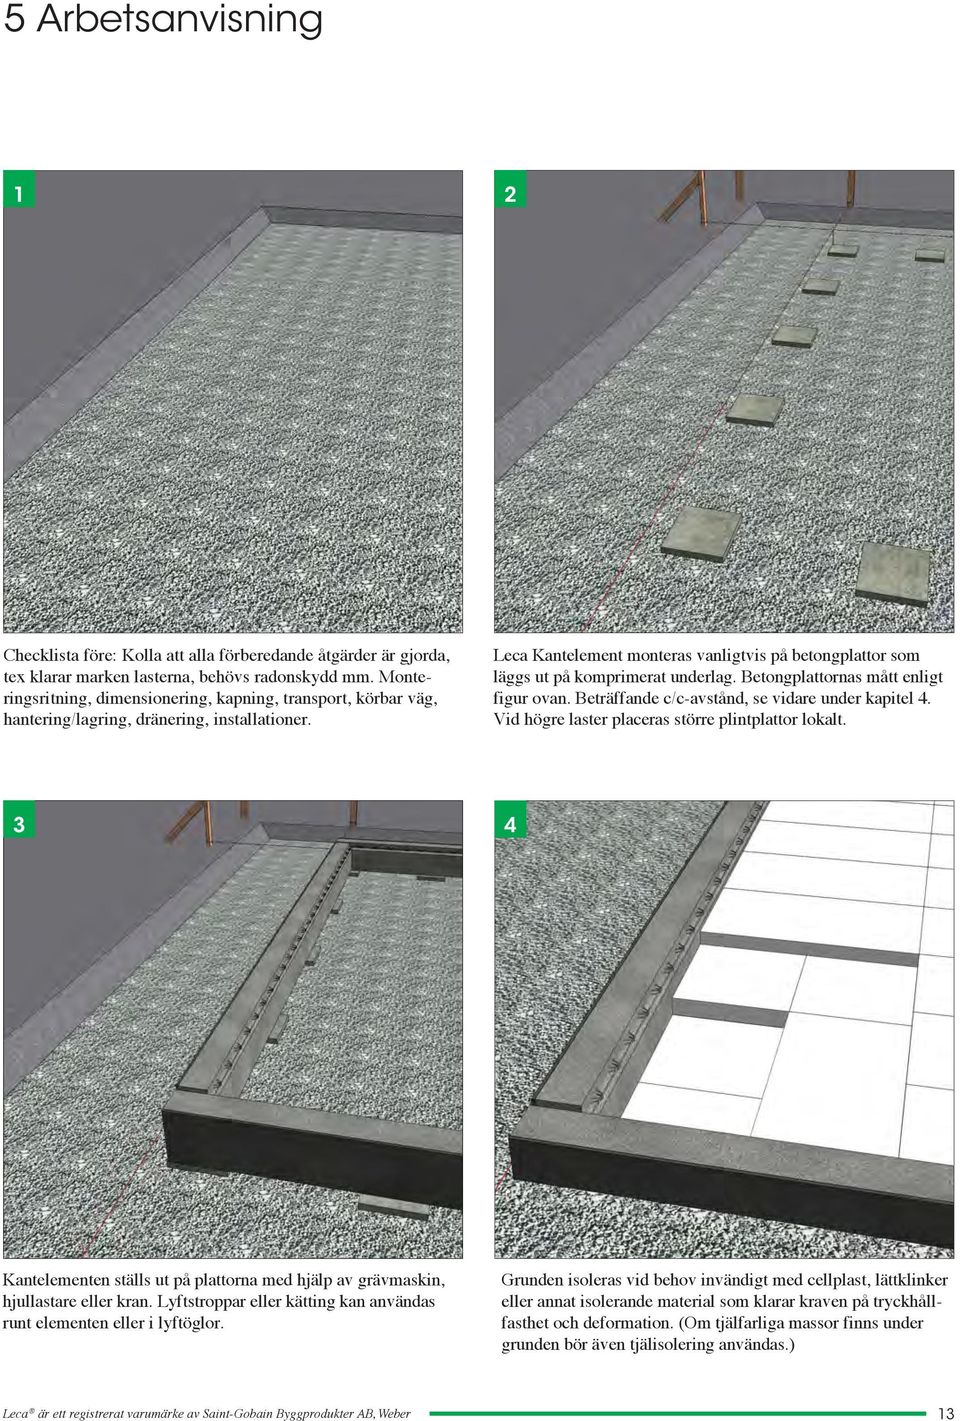 Leca Kantelement monteras vanligtvis på betongplattor som läggs ut på komprimerat underlag. Betongplattornas mått enligt figur ovan. Beträffande c/c-avstånd, se vidare under kapitel 4.